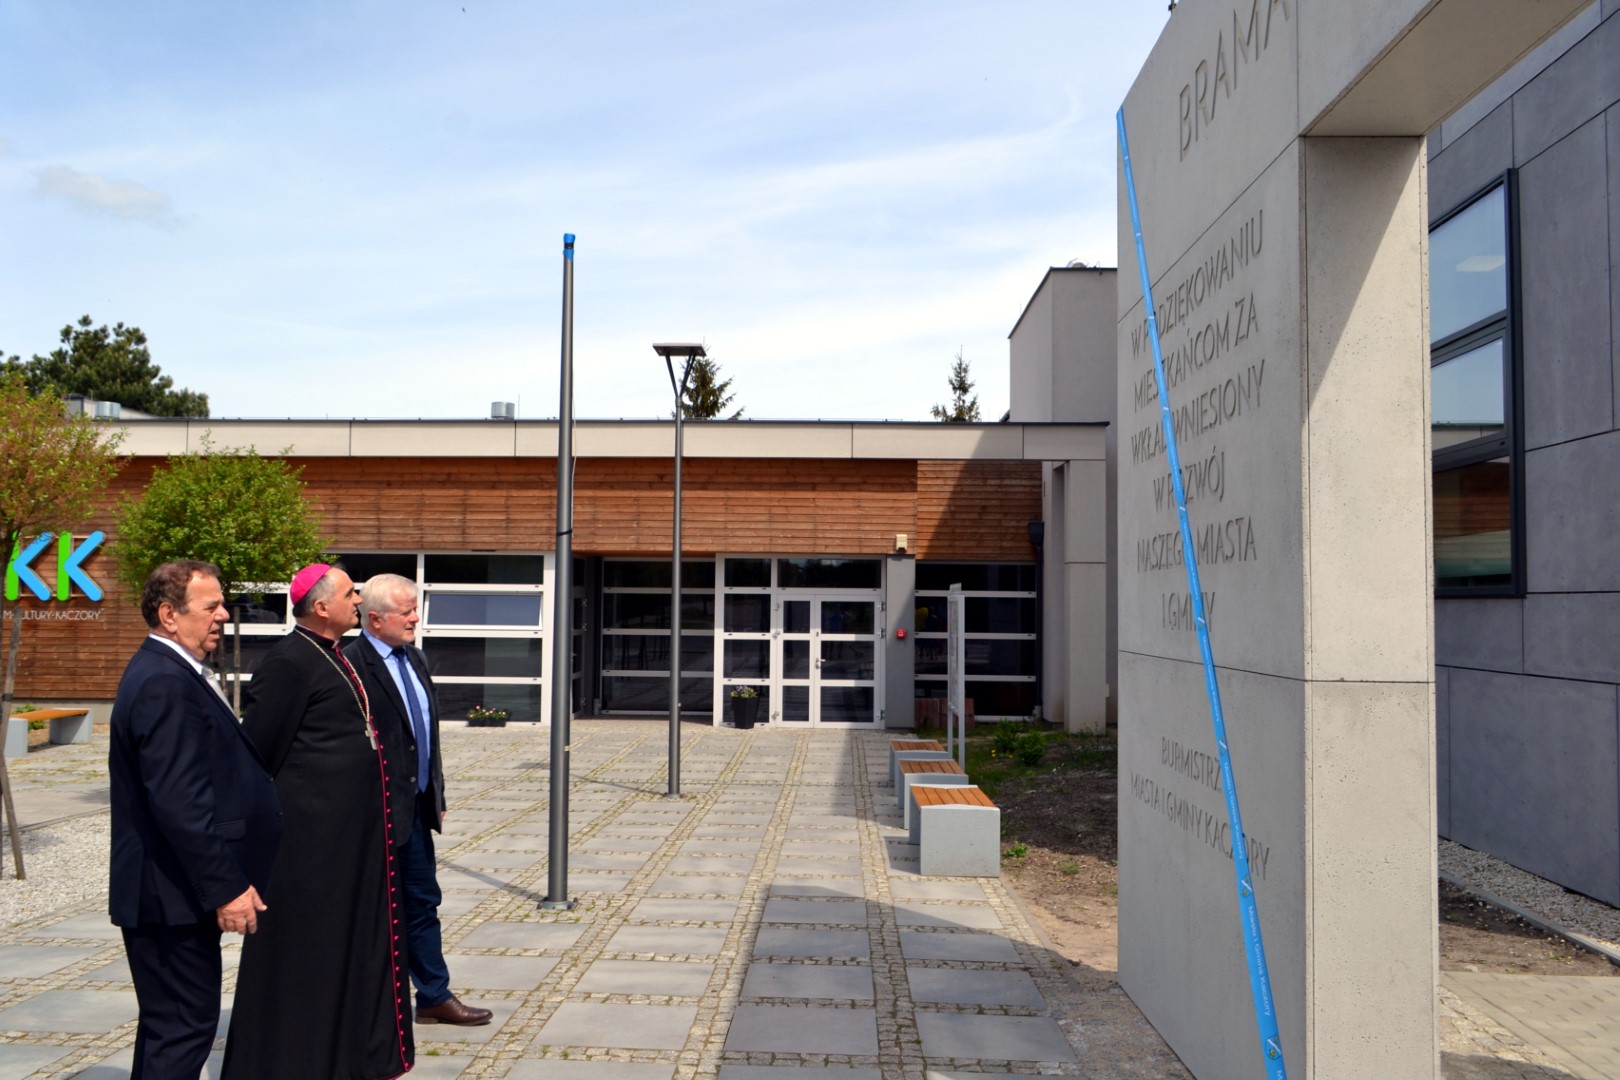 Na zdjęciu widać burmistrza Brunona Wolskiego, ks. biskupa Krzysztofa Włodarczyka i przewodniczącego rady miasta i gminy Stefana Kowala obok bramy miejskiej.